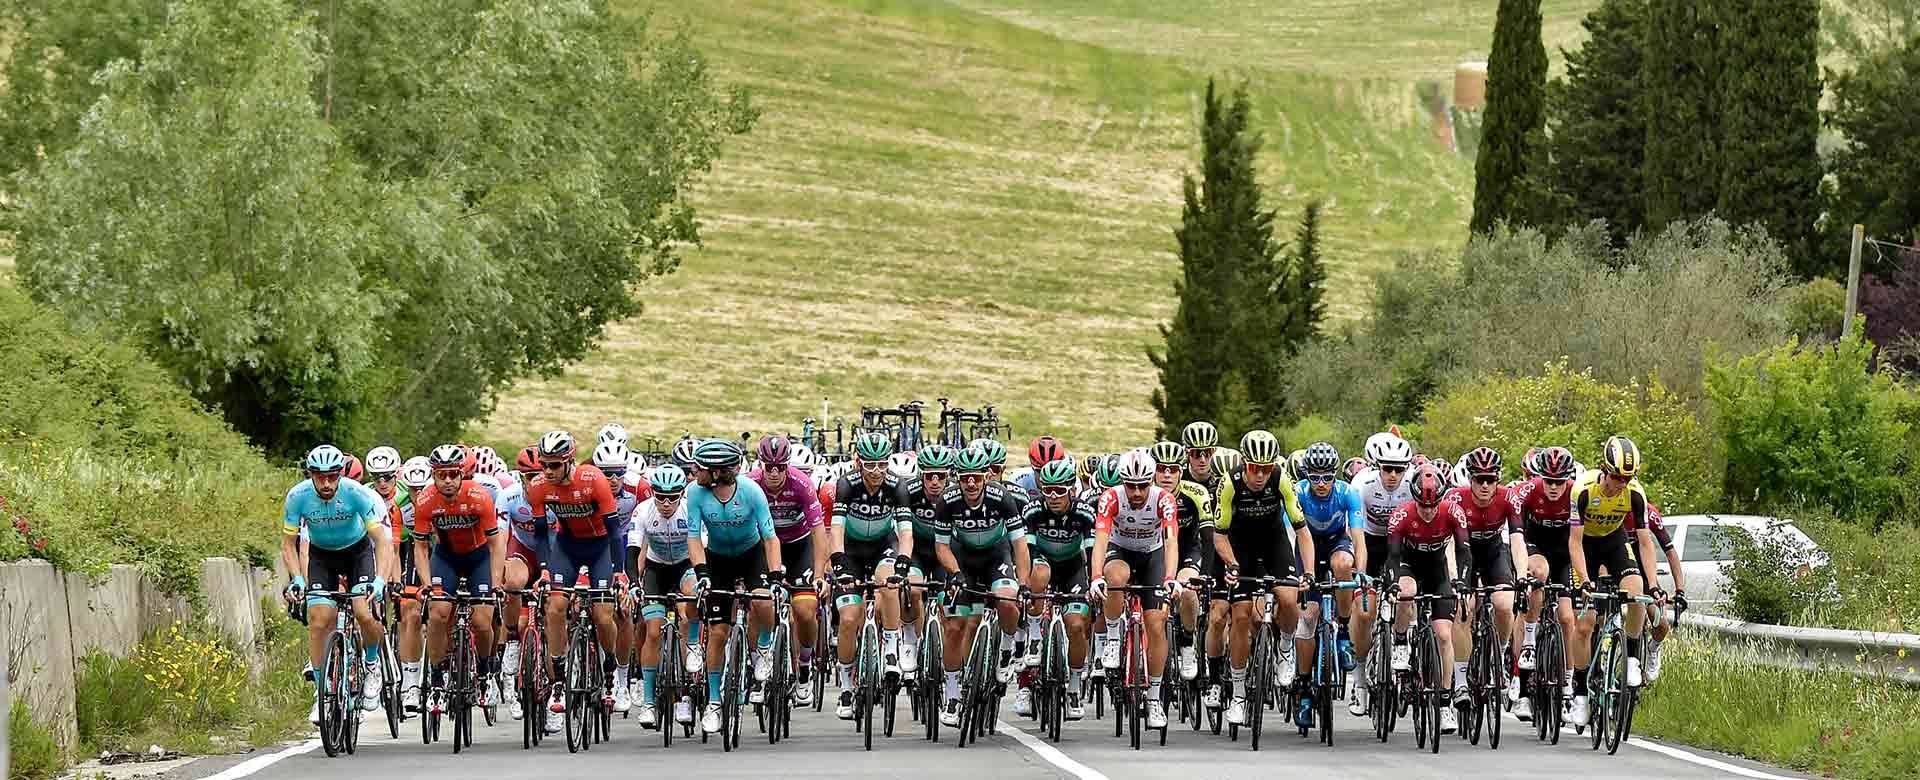 Immagine del Giro d’Italia 2019